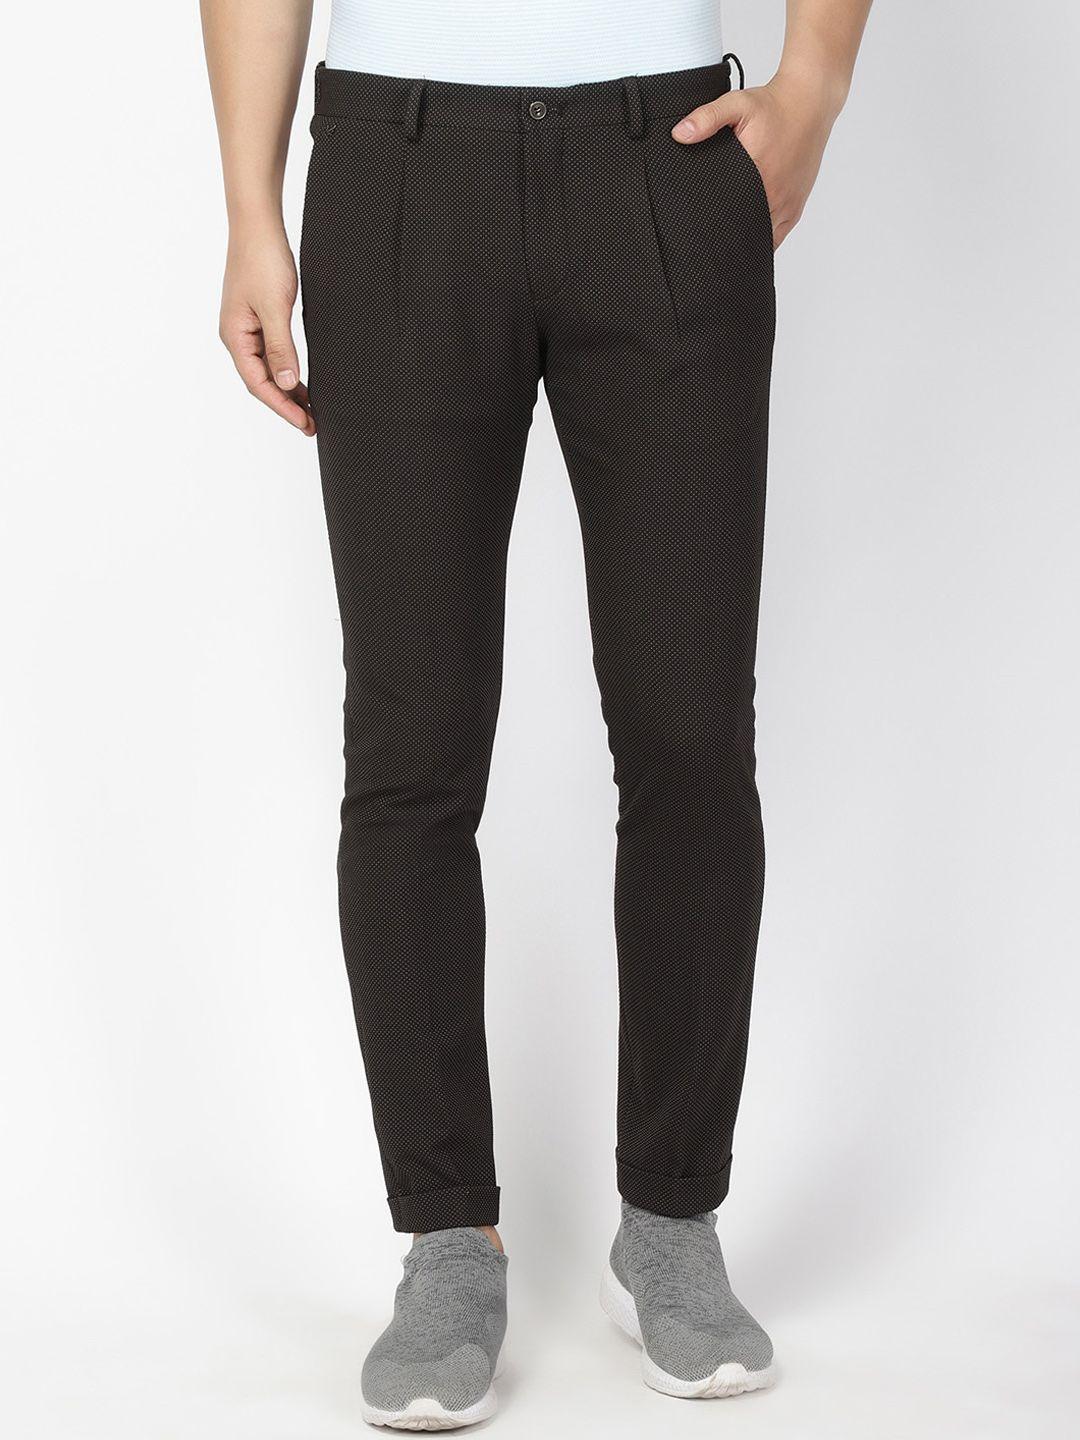 blackberrys-men-brown-phoenix--skinny-fit-printed-regular-trousers